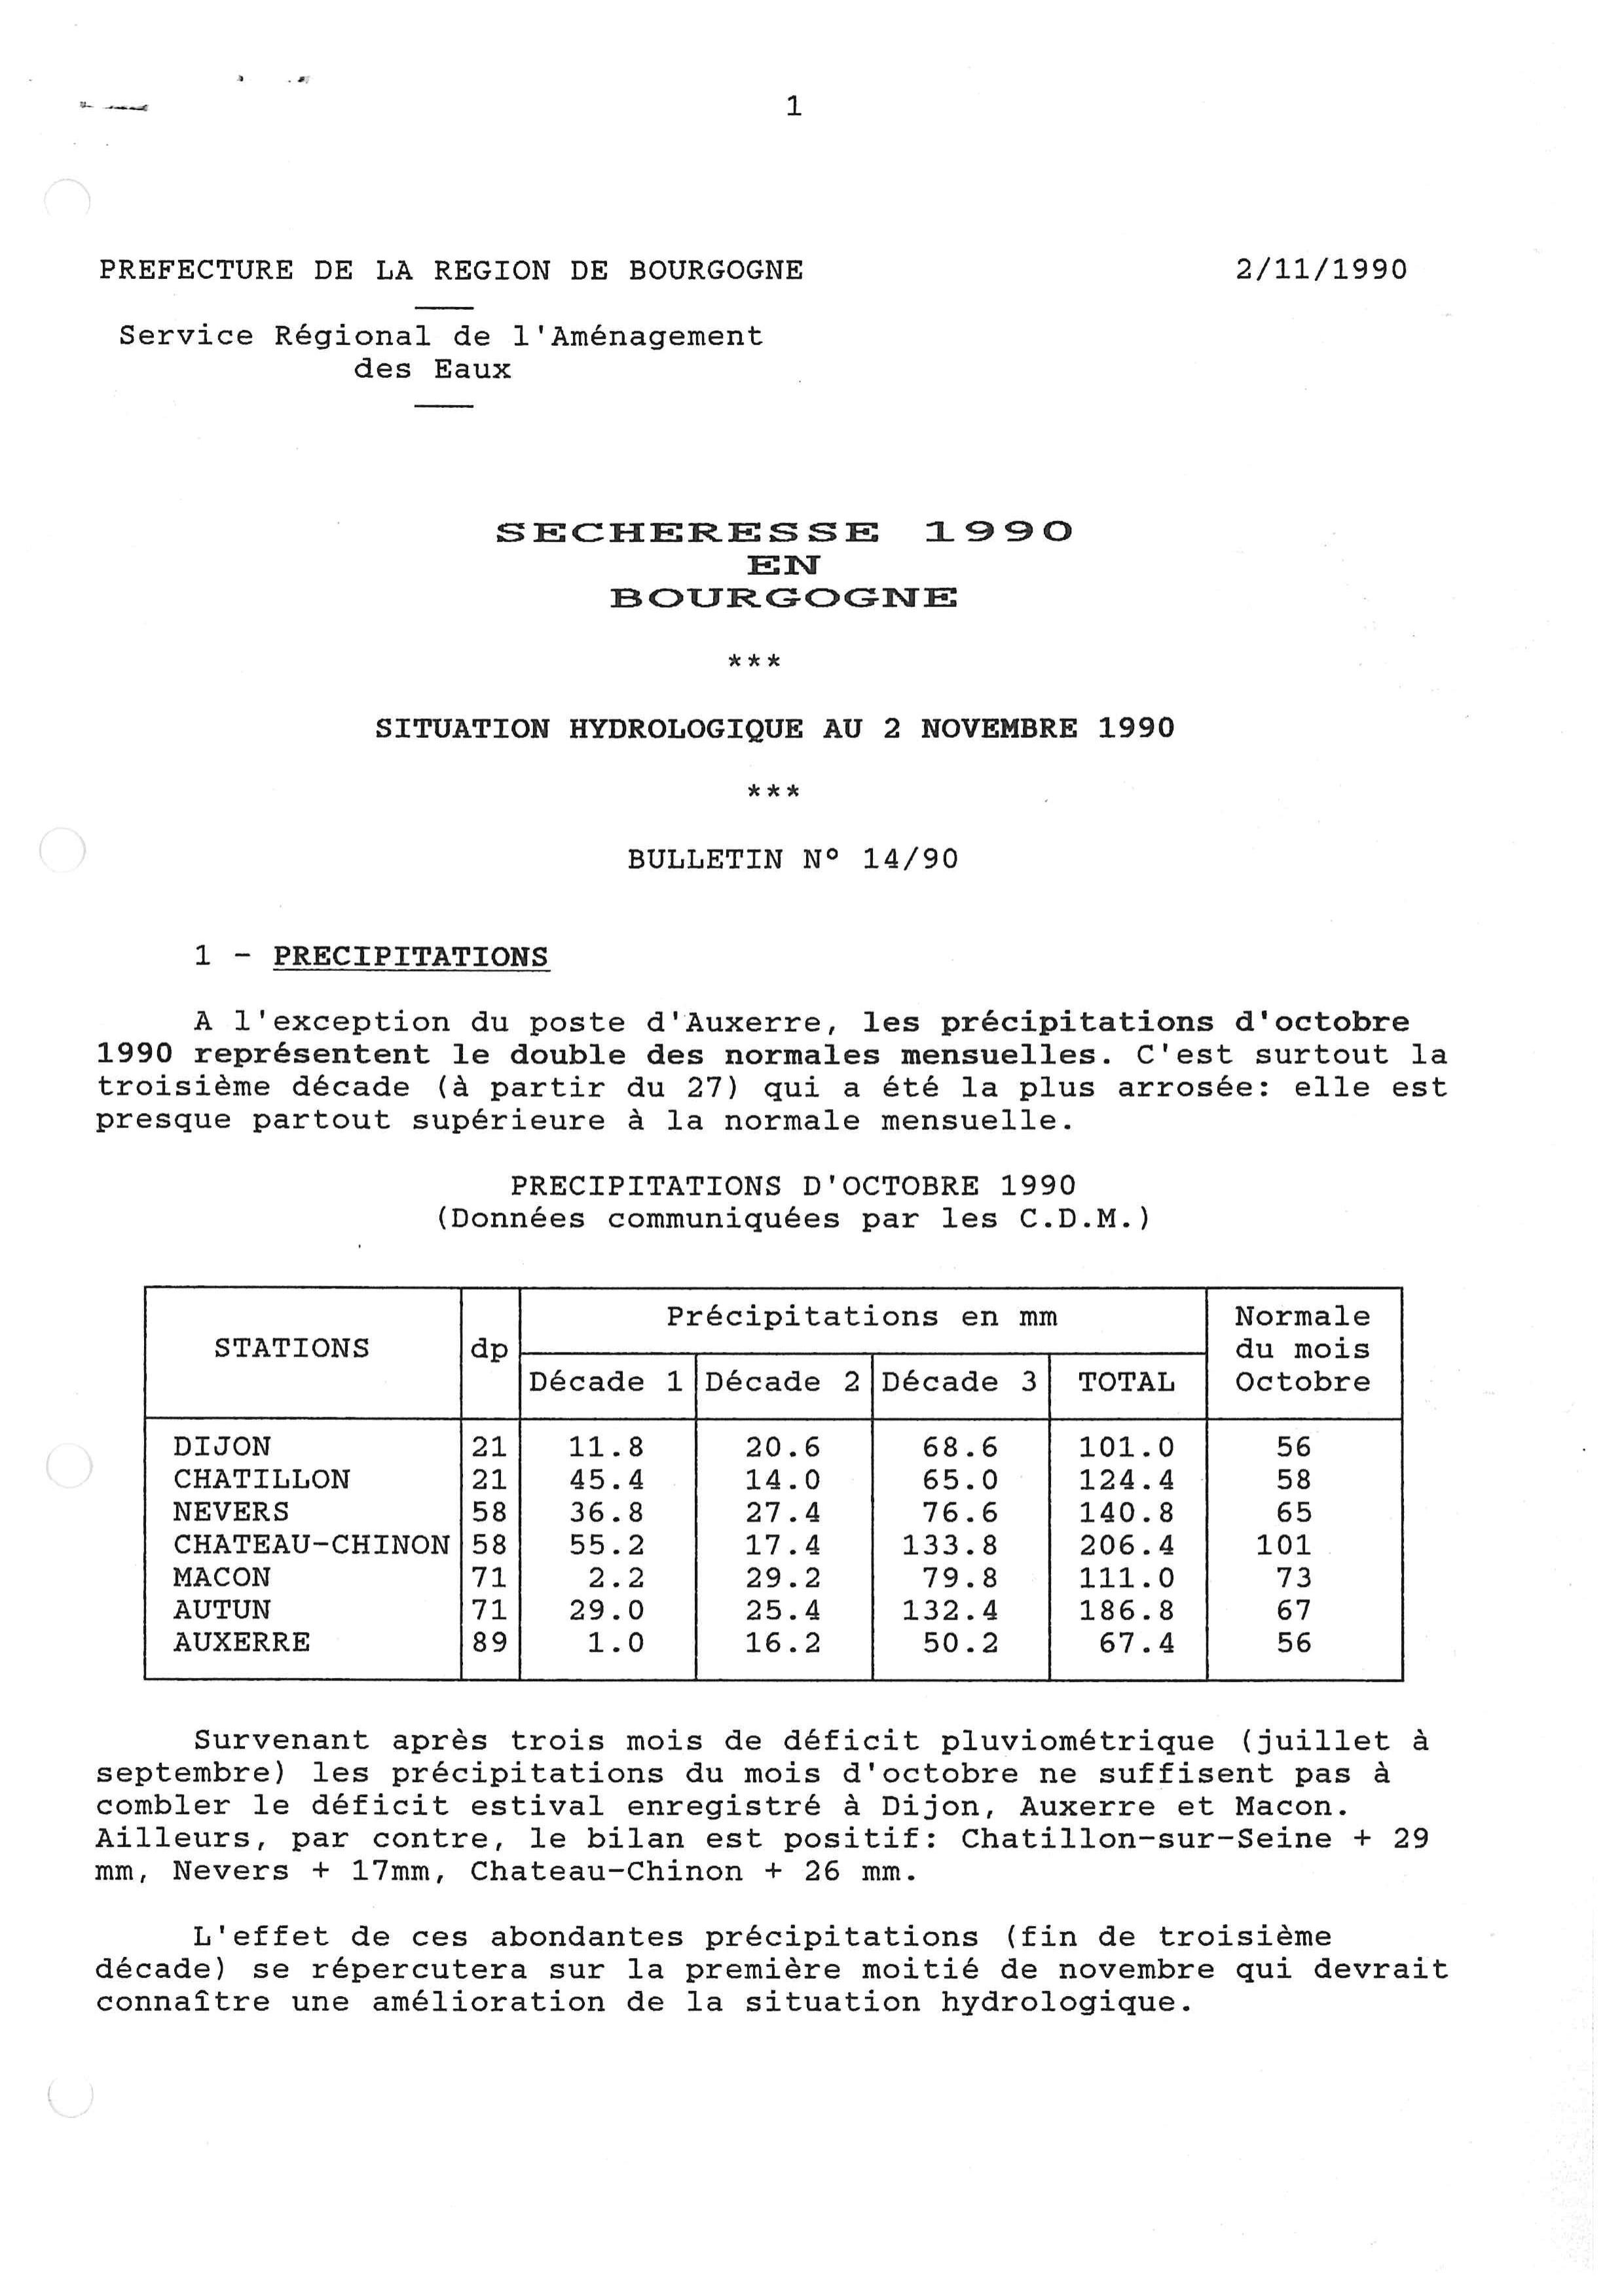 Bulletin hydrologique du mois d'octobre 1990